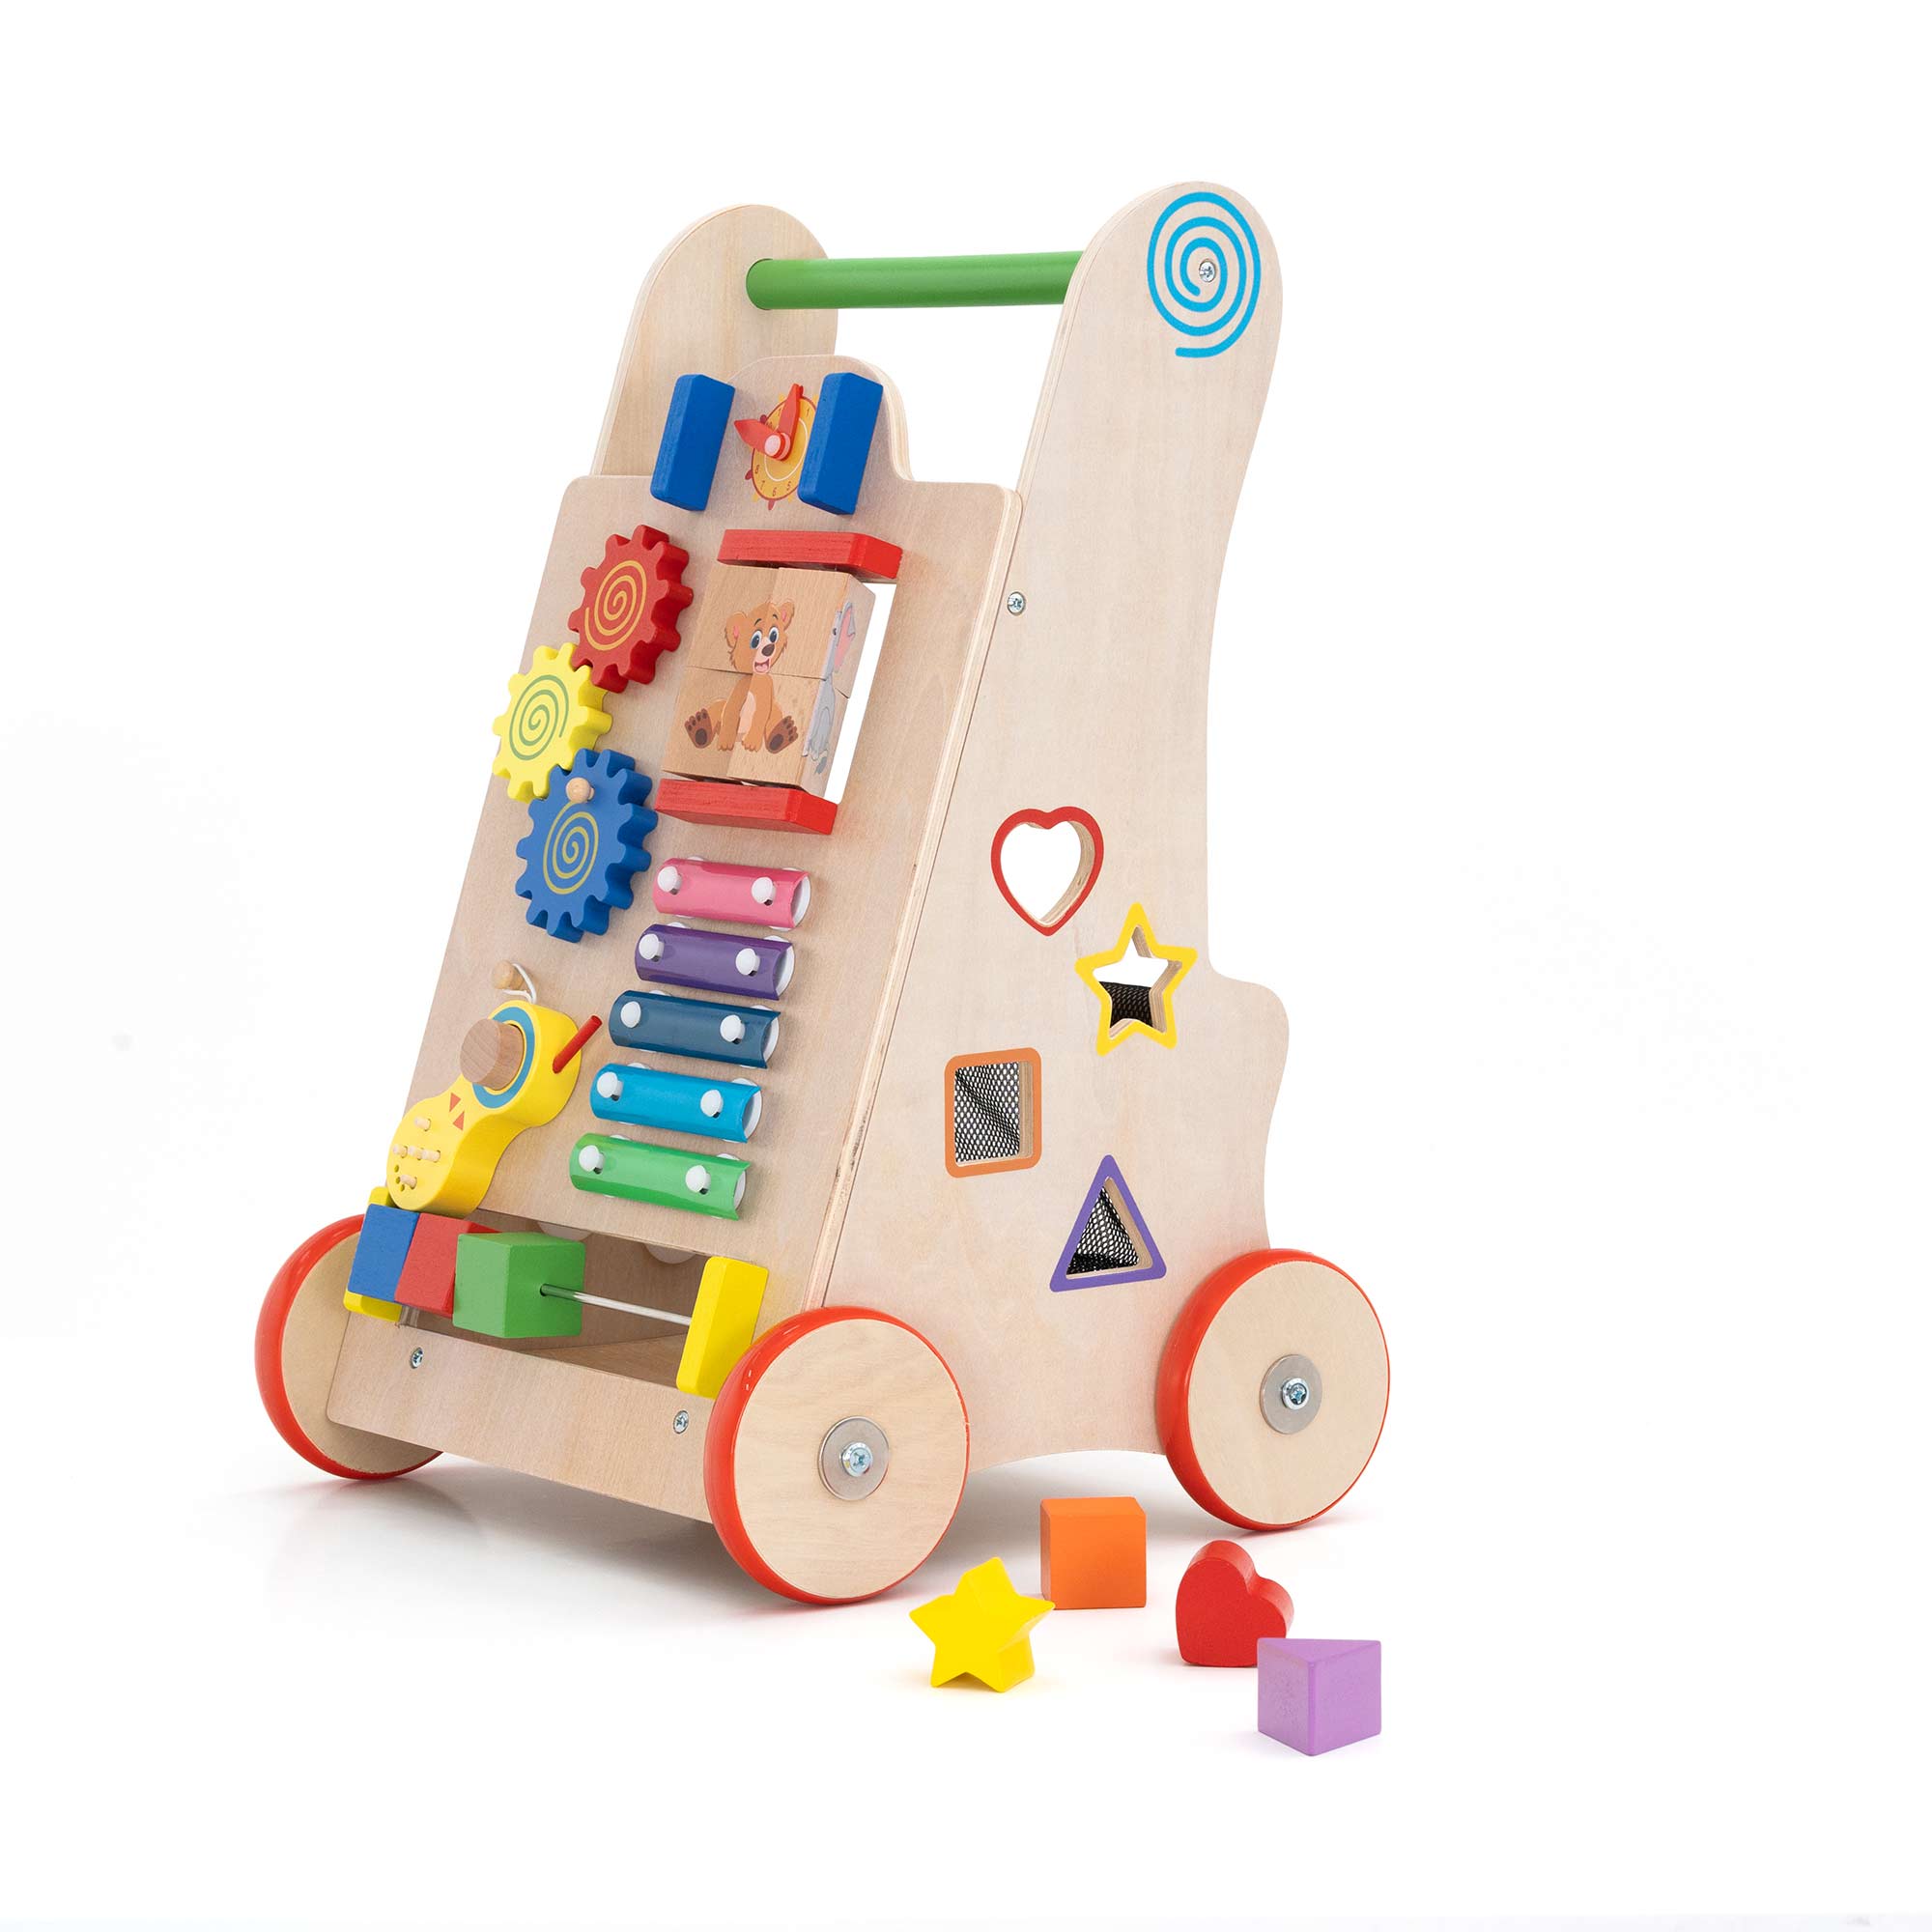 Girello Montessori con pezzi in legno e puzzle